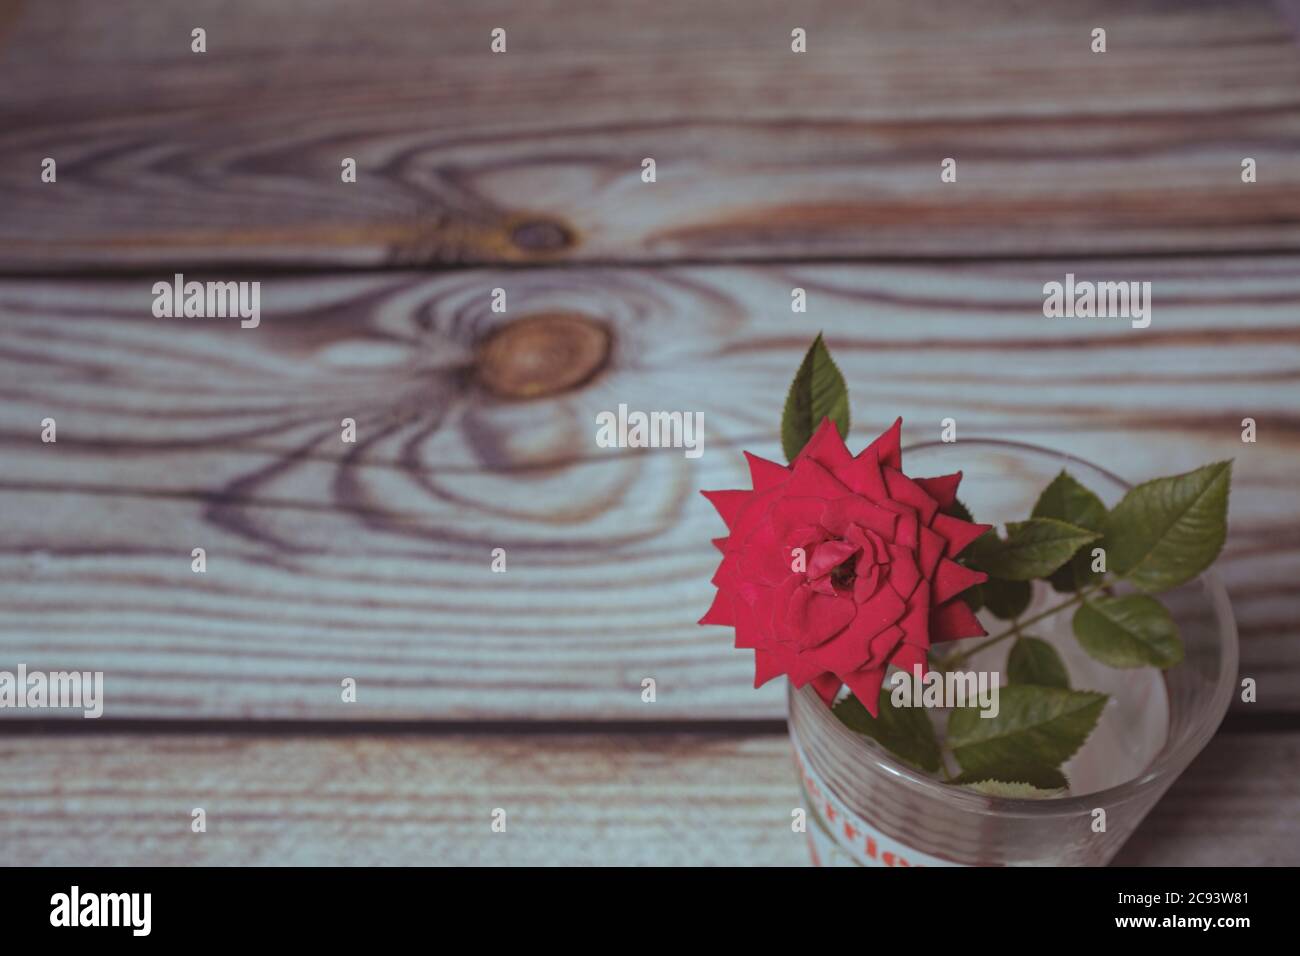 Petite fleur de rose rouge en fleur sur une scène intérieure avec pot de vase en verre sur une planche en bois Banque D'Images